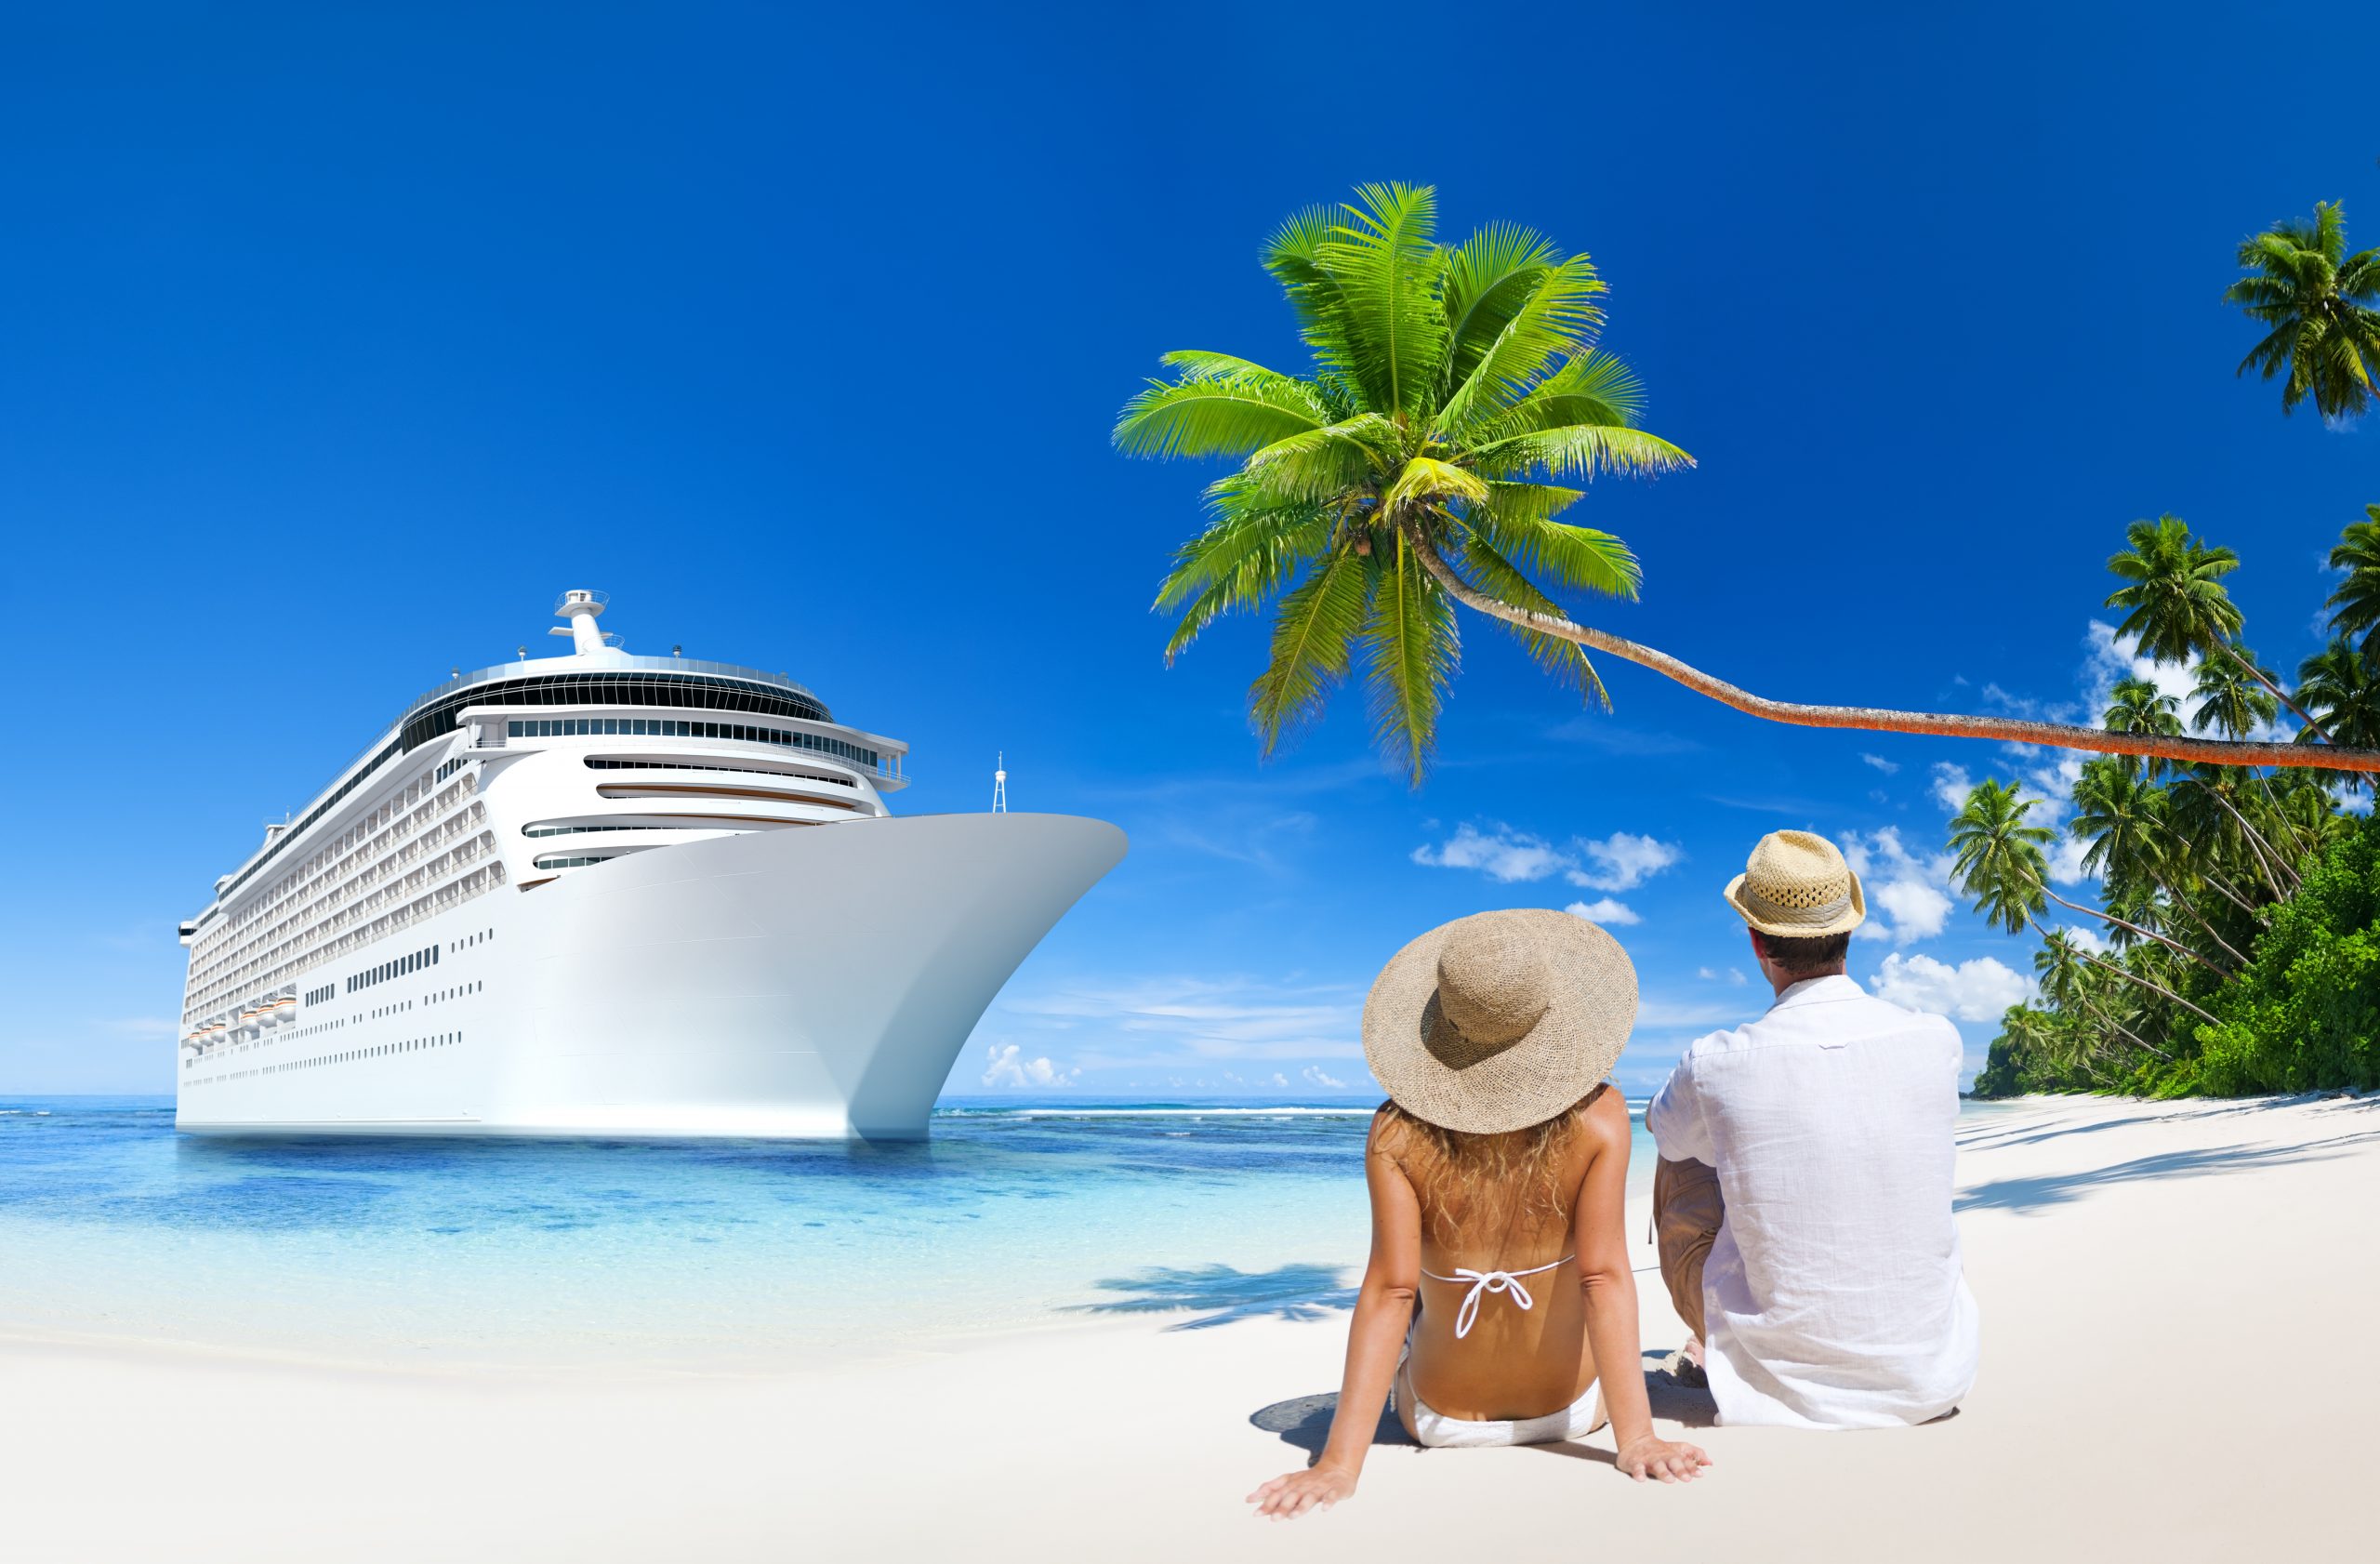 cruise.co.uk travel insurance